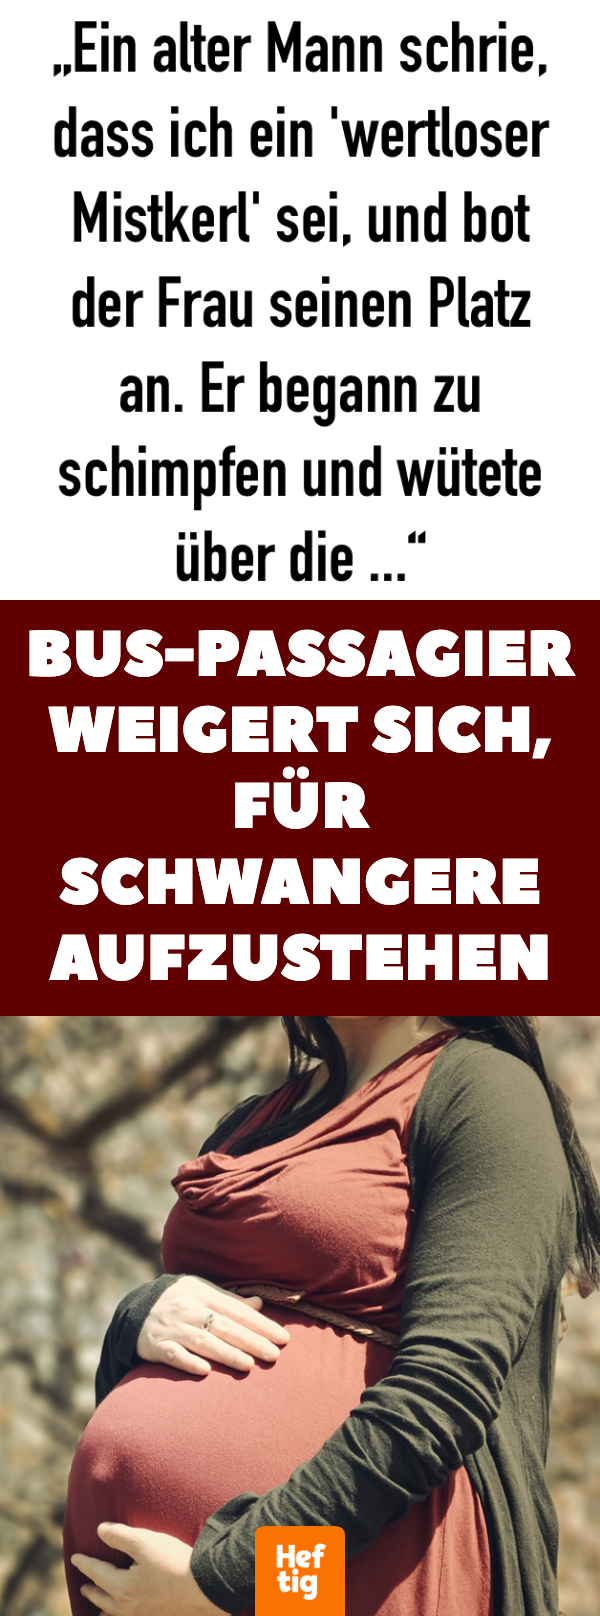 Bus-Passagier weigert sich, für Schwangere aufzustehen